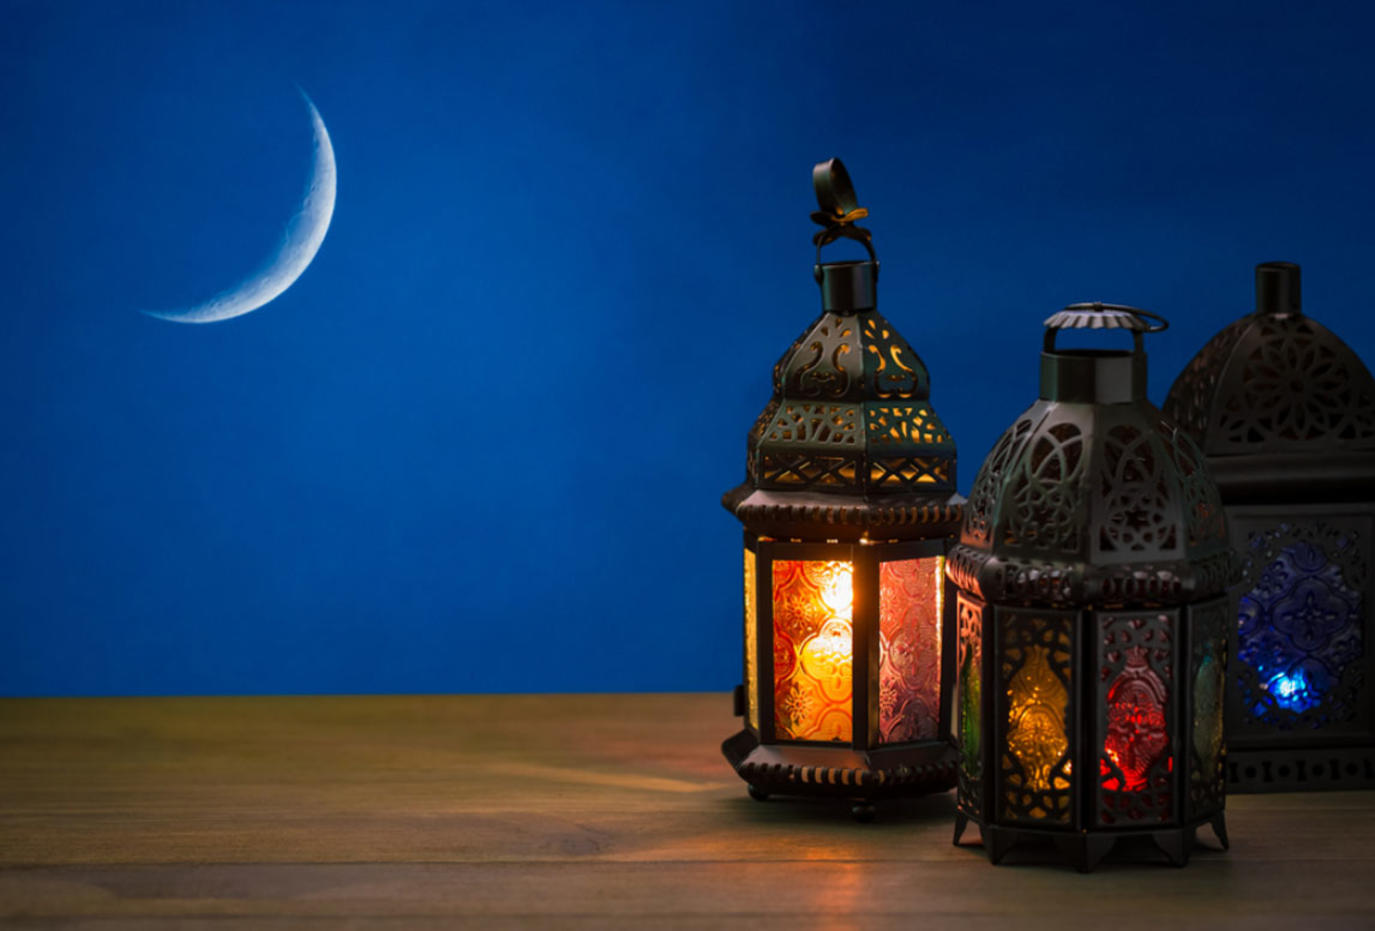 من أول من سمى شهر رمضان بهذا الاسم؟ Image